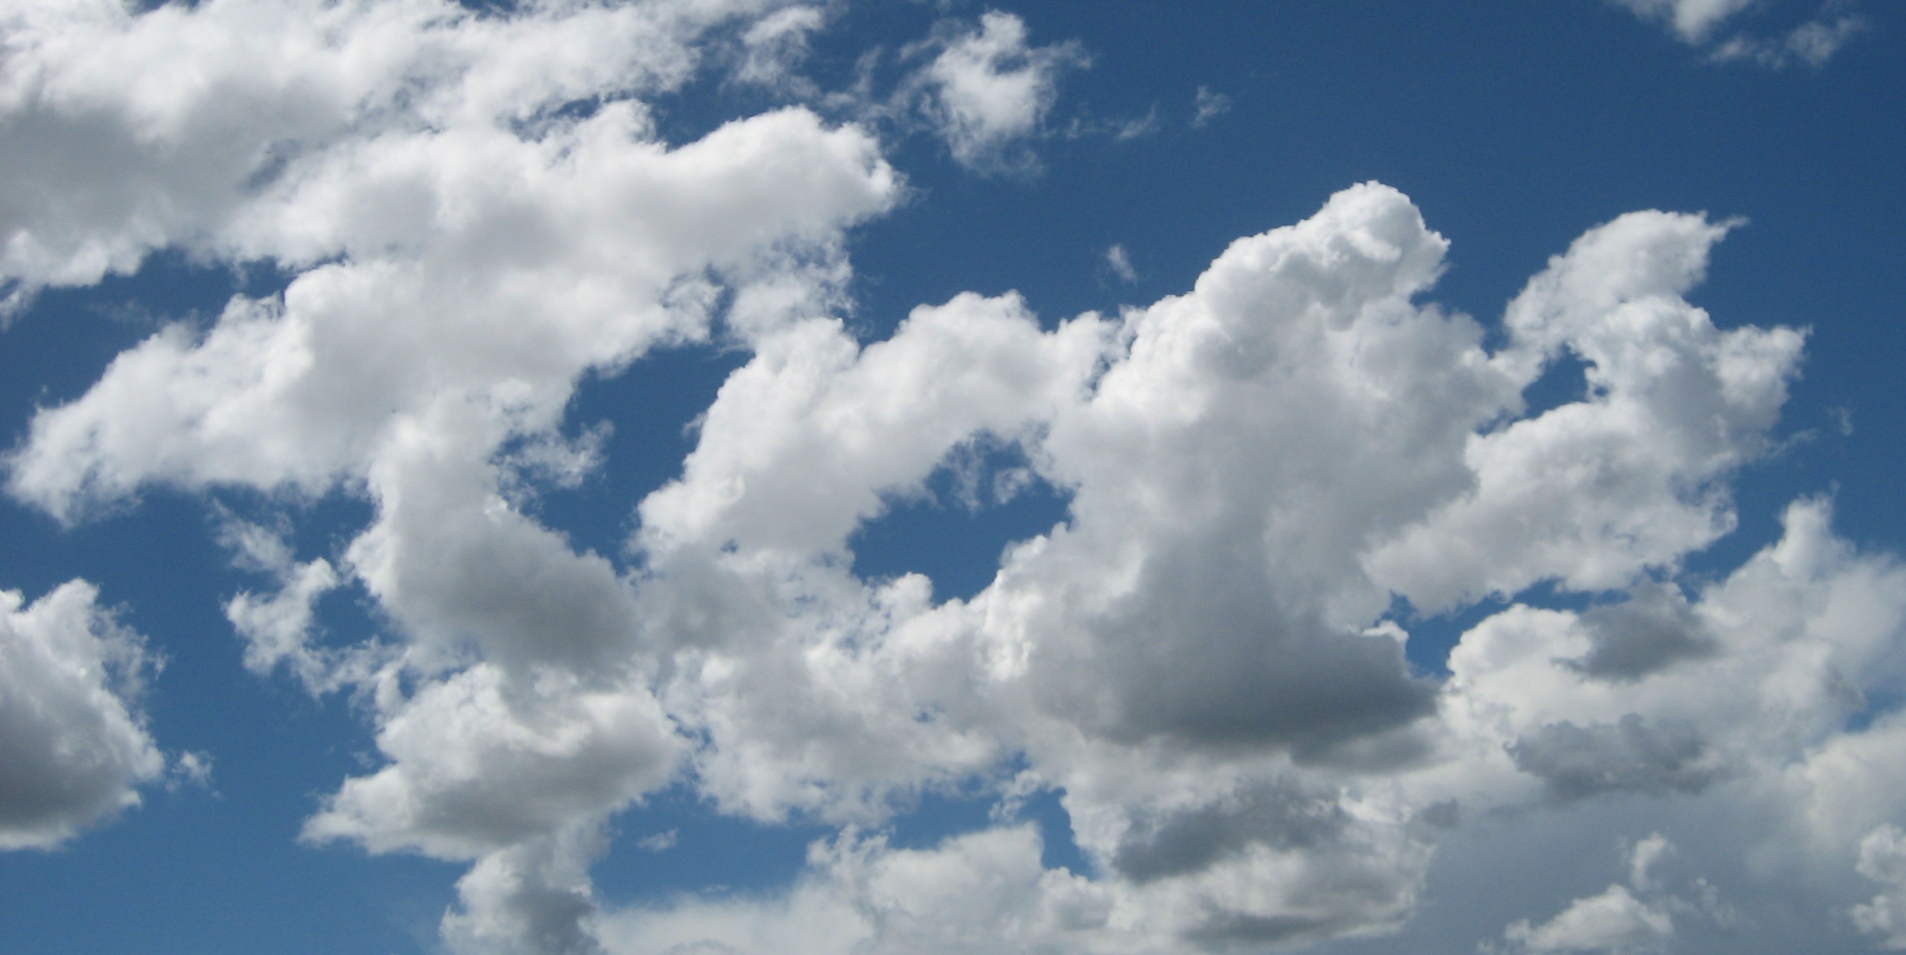 Bạn đang tìm kiếm một nền mây động tuyệt đẹp để sử dụng làm hình nền cho máy tính của mình? Đừng bỏ lỡ tải miễn phí nền mây di động [1906x955] được cung cấp chuyên nghiệp và chất lượng tuyệt đẹp trên trang web này.